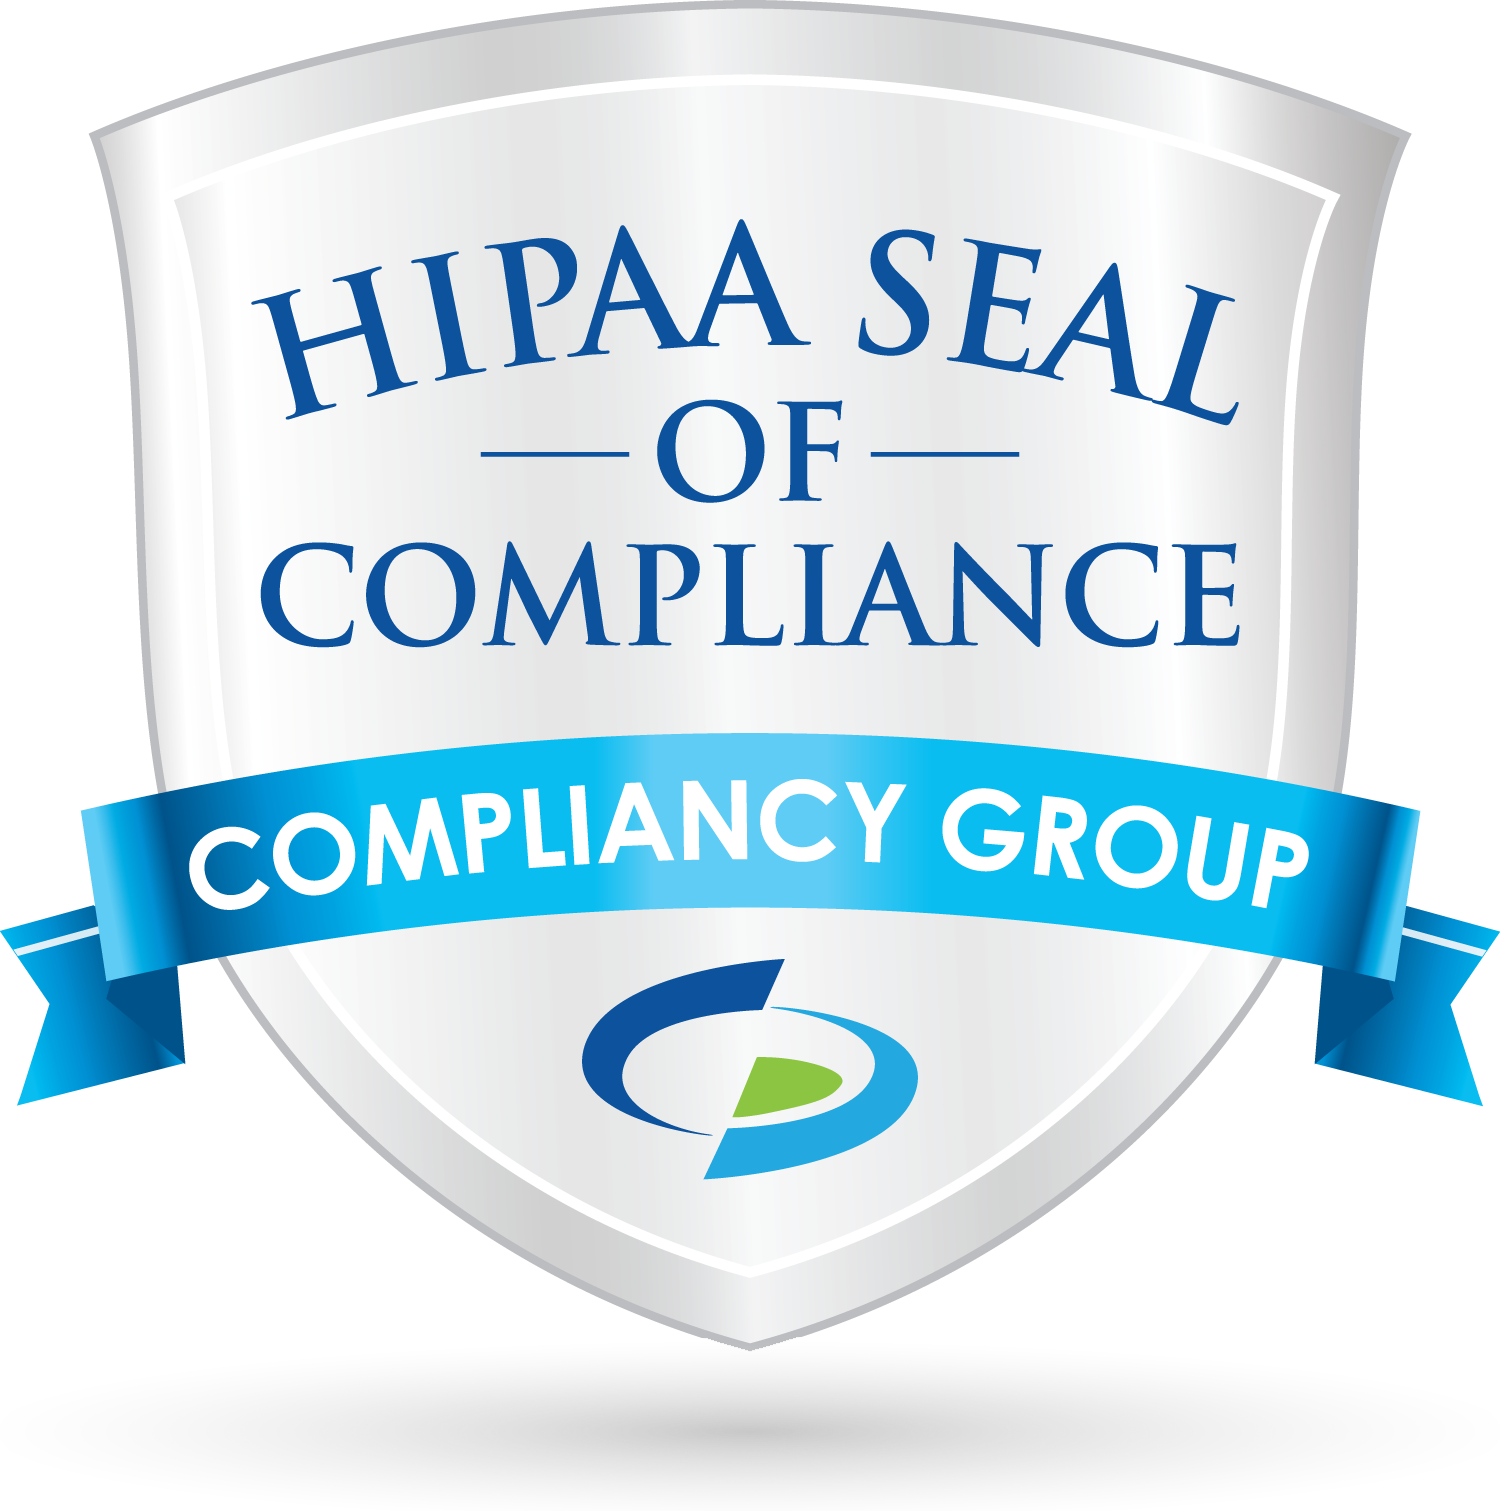 HIPAA SEAL